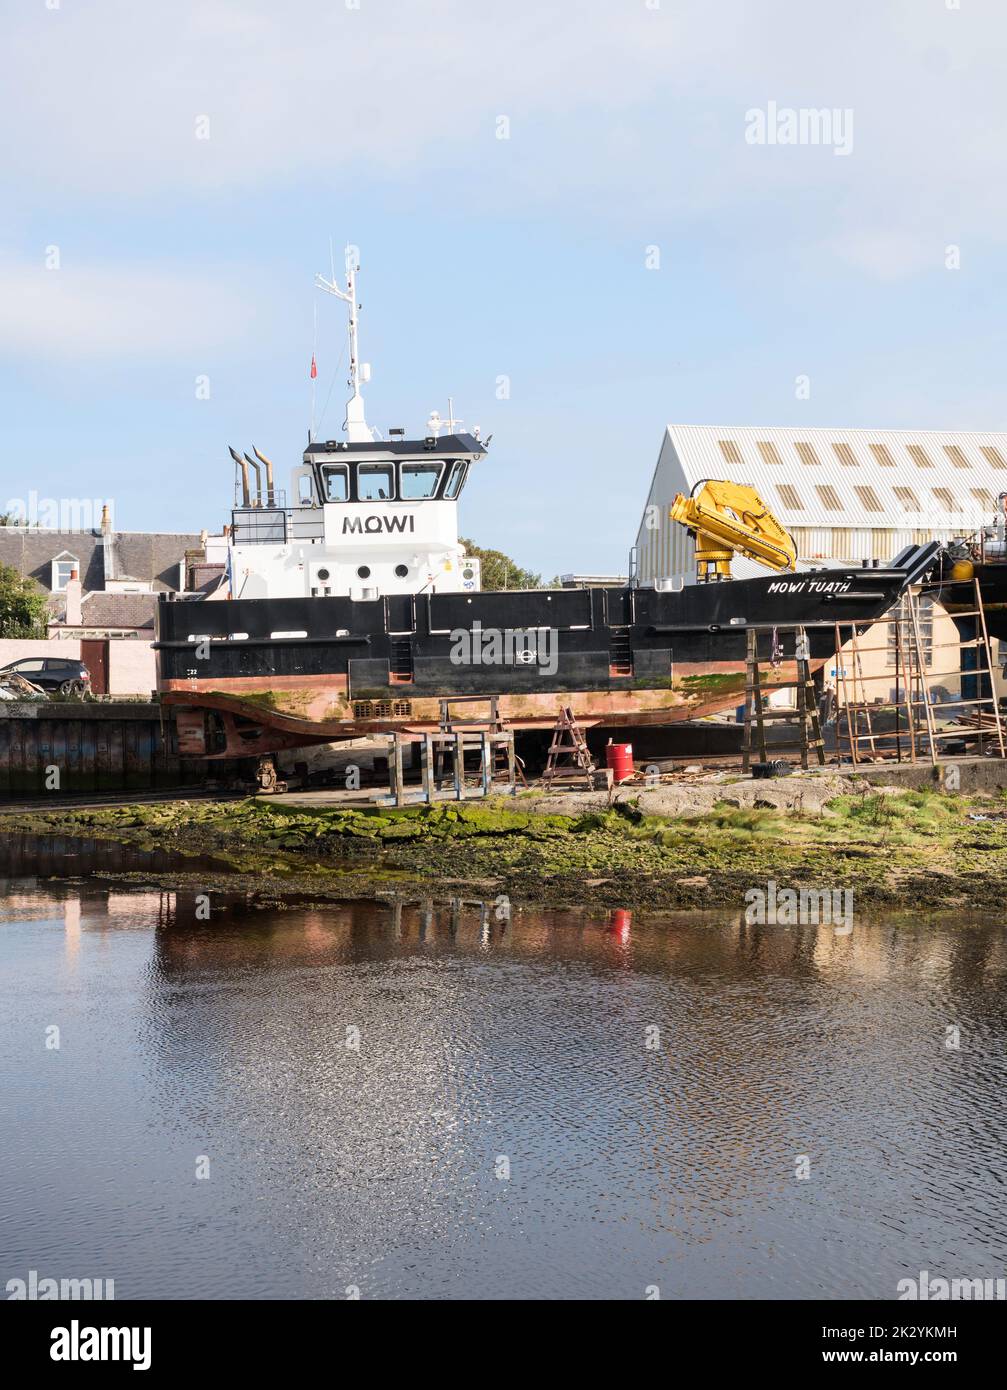 La nave di sostegno all'allevamento del salmone Mowi Tuath, sulla via di scorrimento degli ingegneri marini Alexander Noble & Sons, nel porto di Girvan, nel South Ayrshire, Scozia, Regno Unito Foto Stock